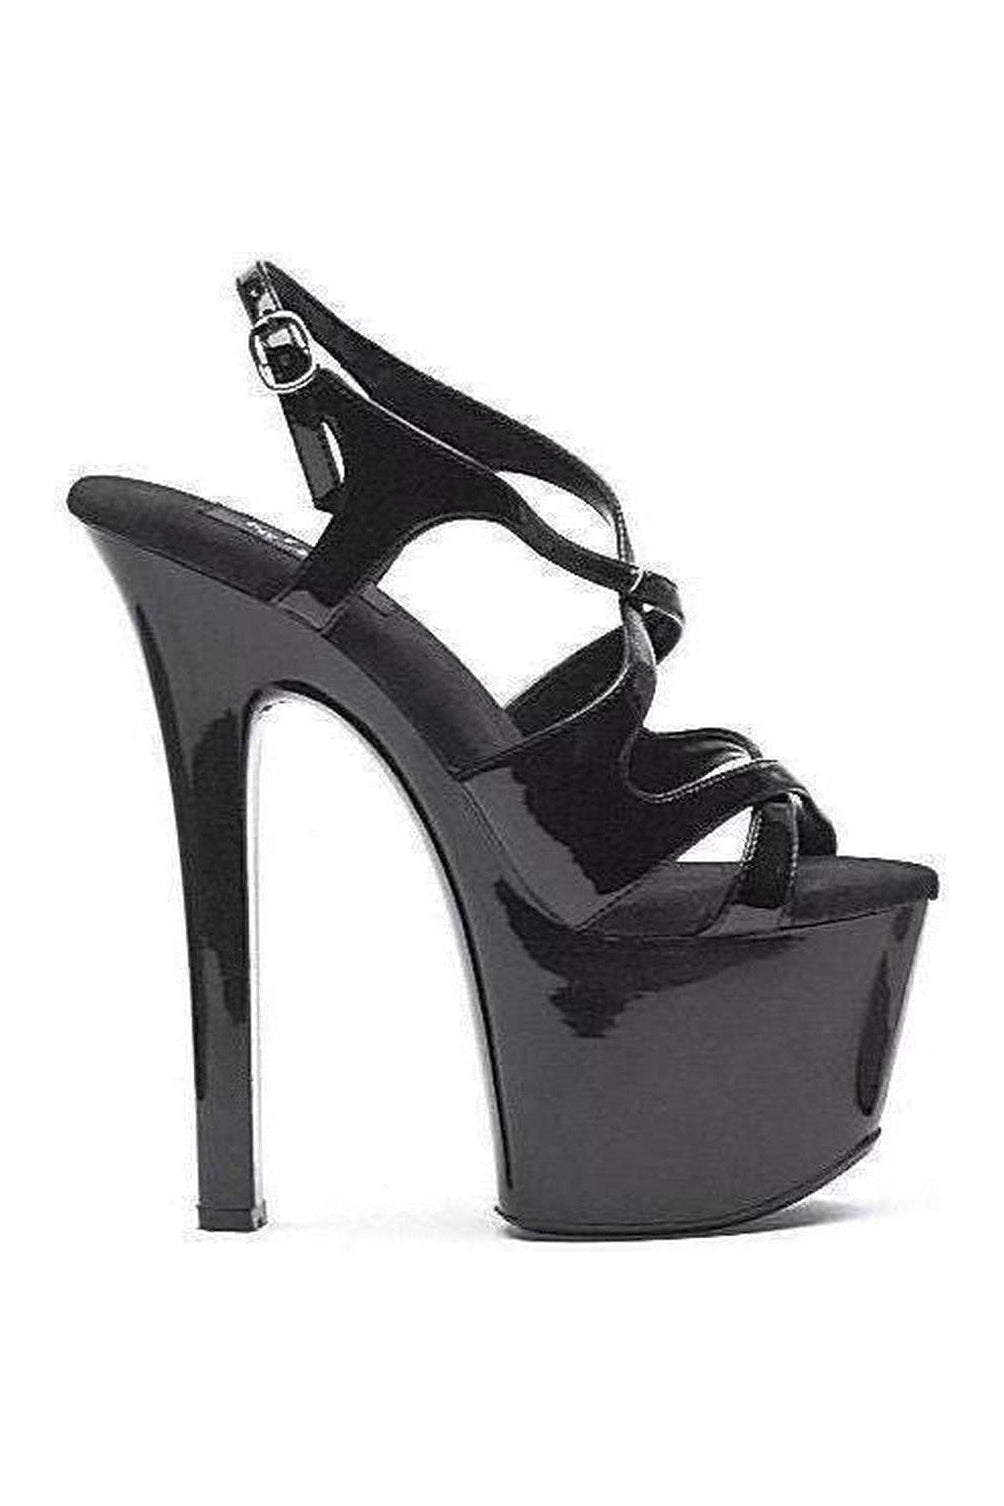 711-LANCE Platform Sandal | Black Patent-Ellie Shoes-SEXYSHOES.COM